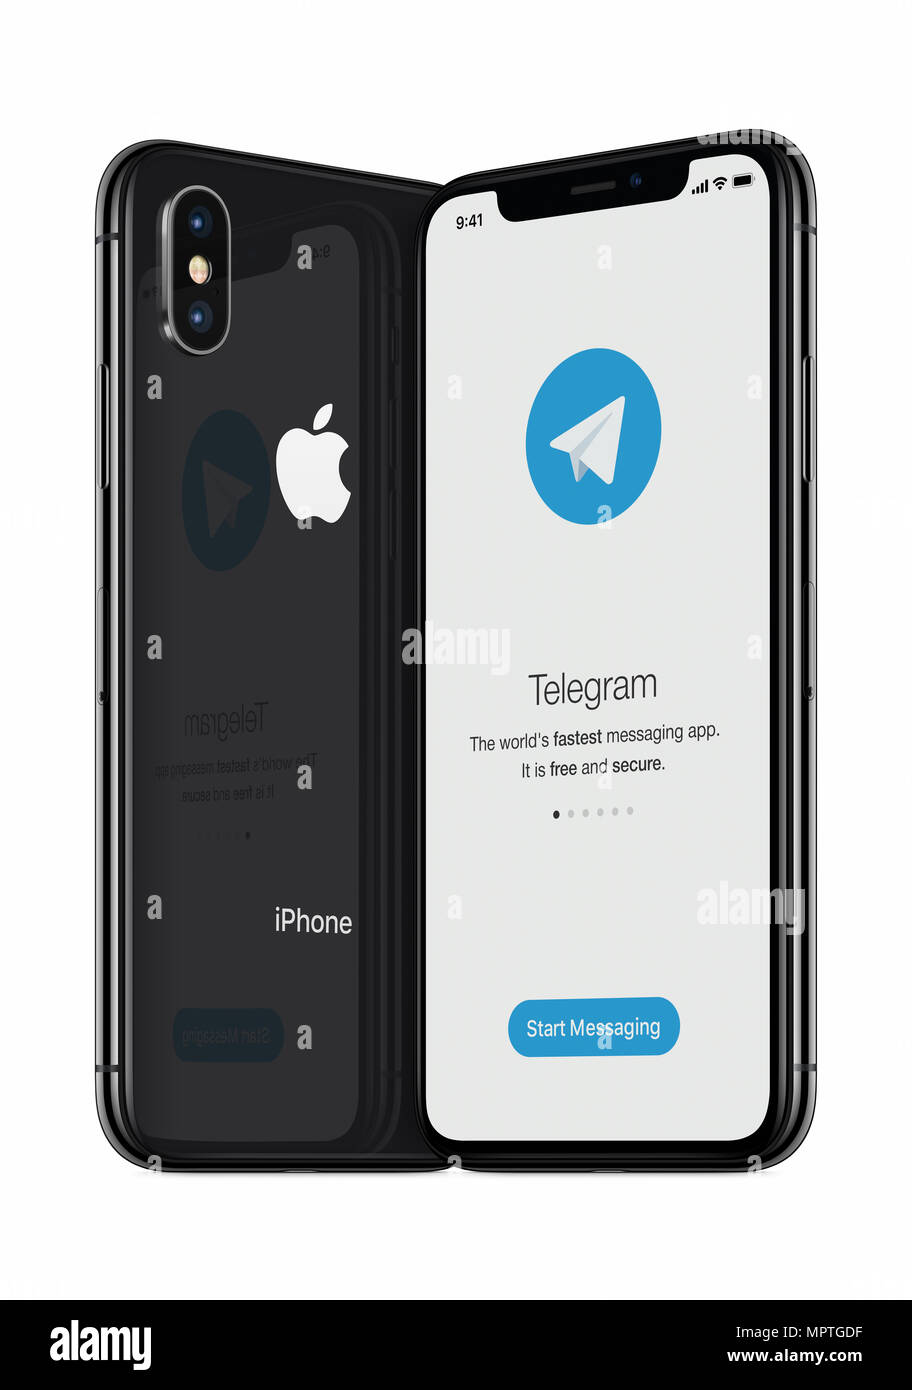 L'écran de lancement messenger télégramme télégramme avec logo sur iPhone Apple s'affiche X. Banque D'Images